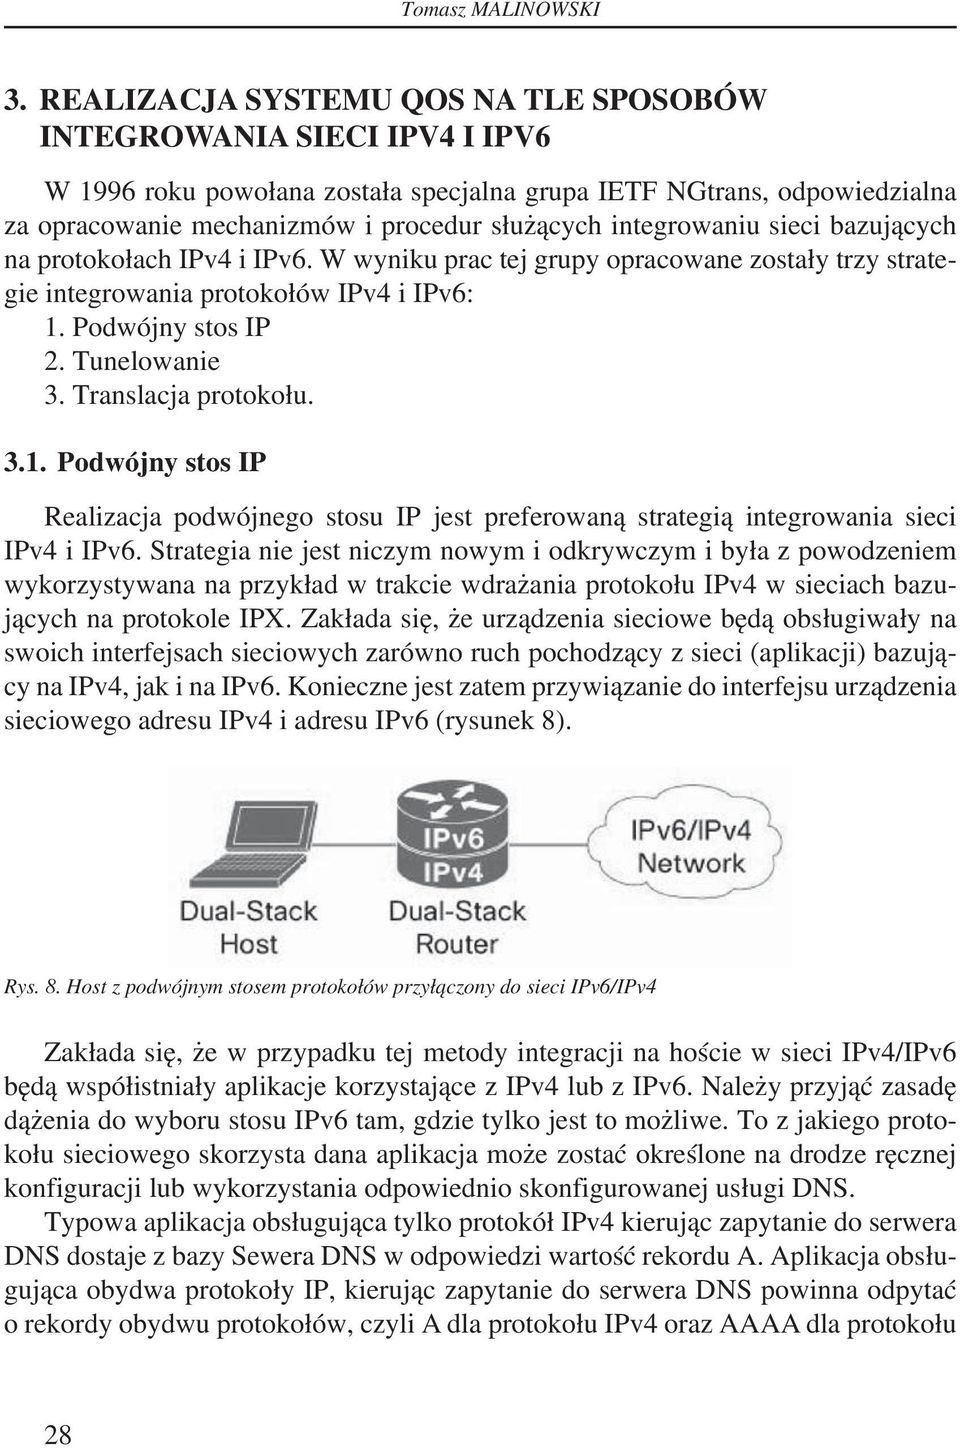 integrowaniu sieci bazujących na protokołach IPv4 i IPv6. W wyniku prac tej grupy opracowane zostały trzy strategie integrowania protokołów IPv4 i IPv6: 1. Podwójny stos IP 2. Tunelowanie 3.